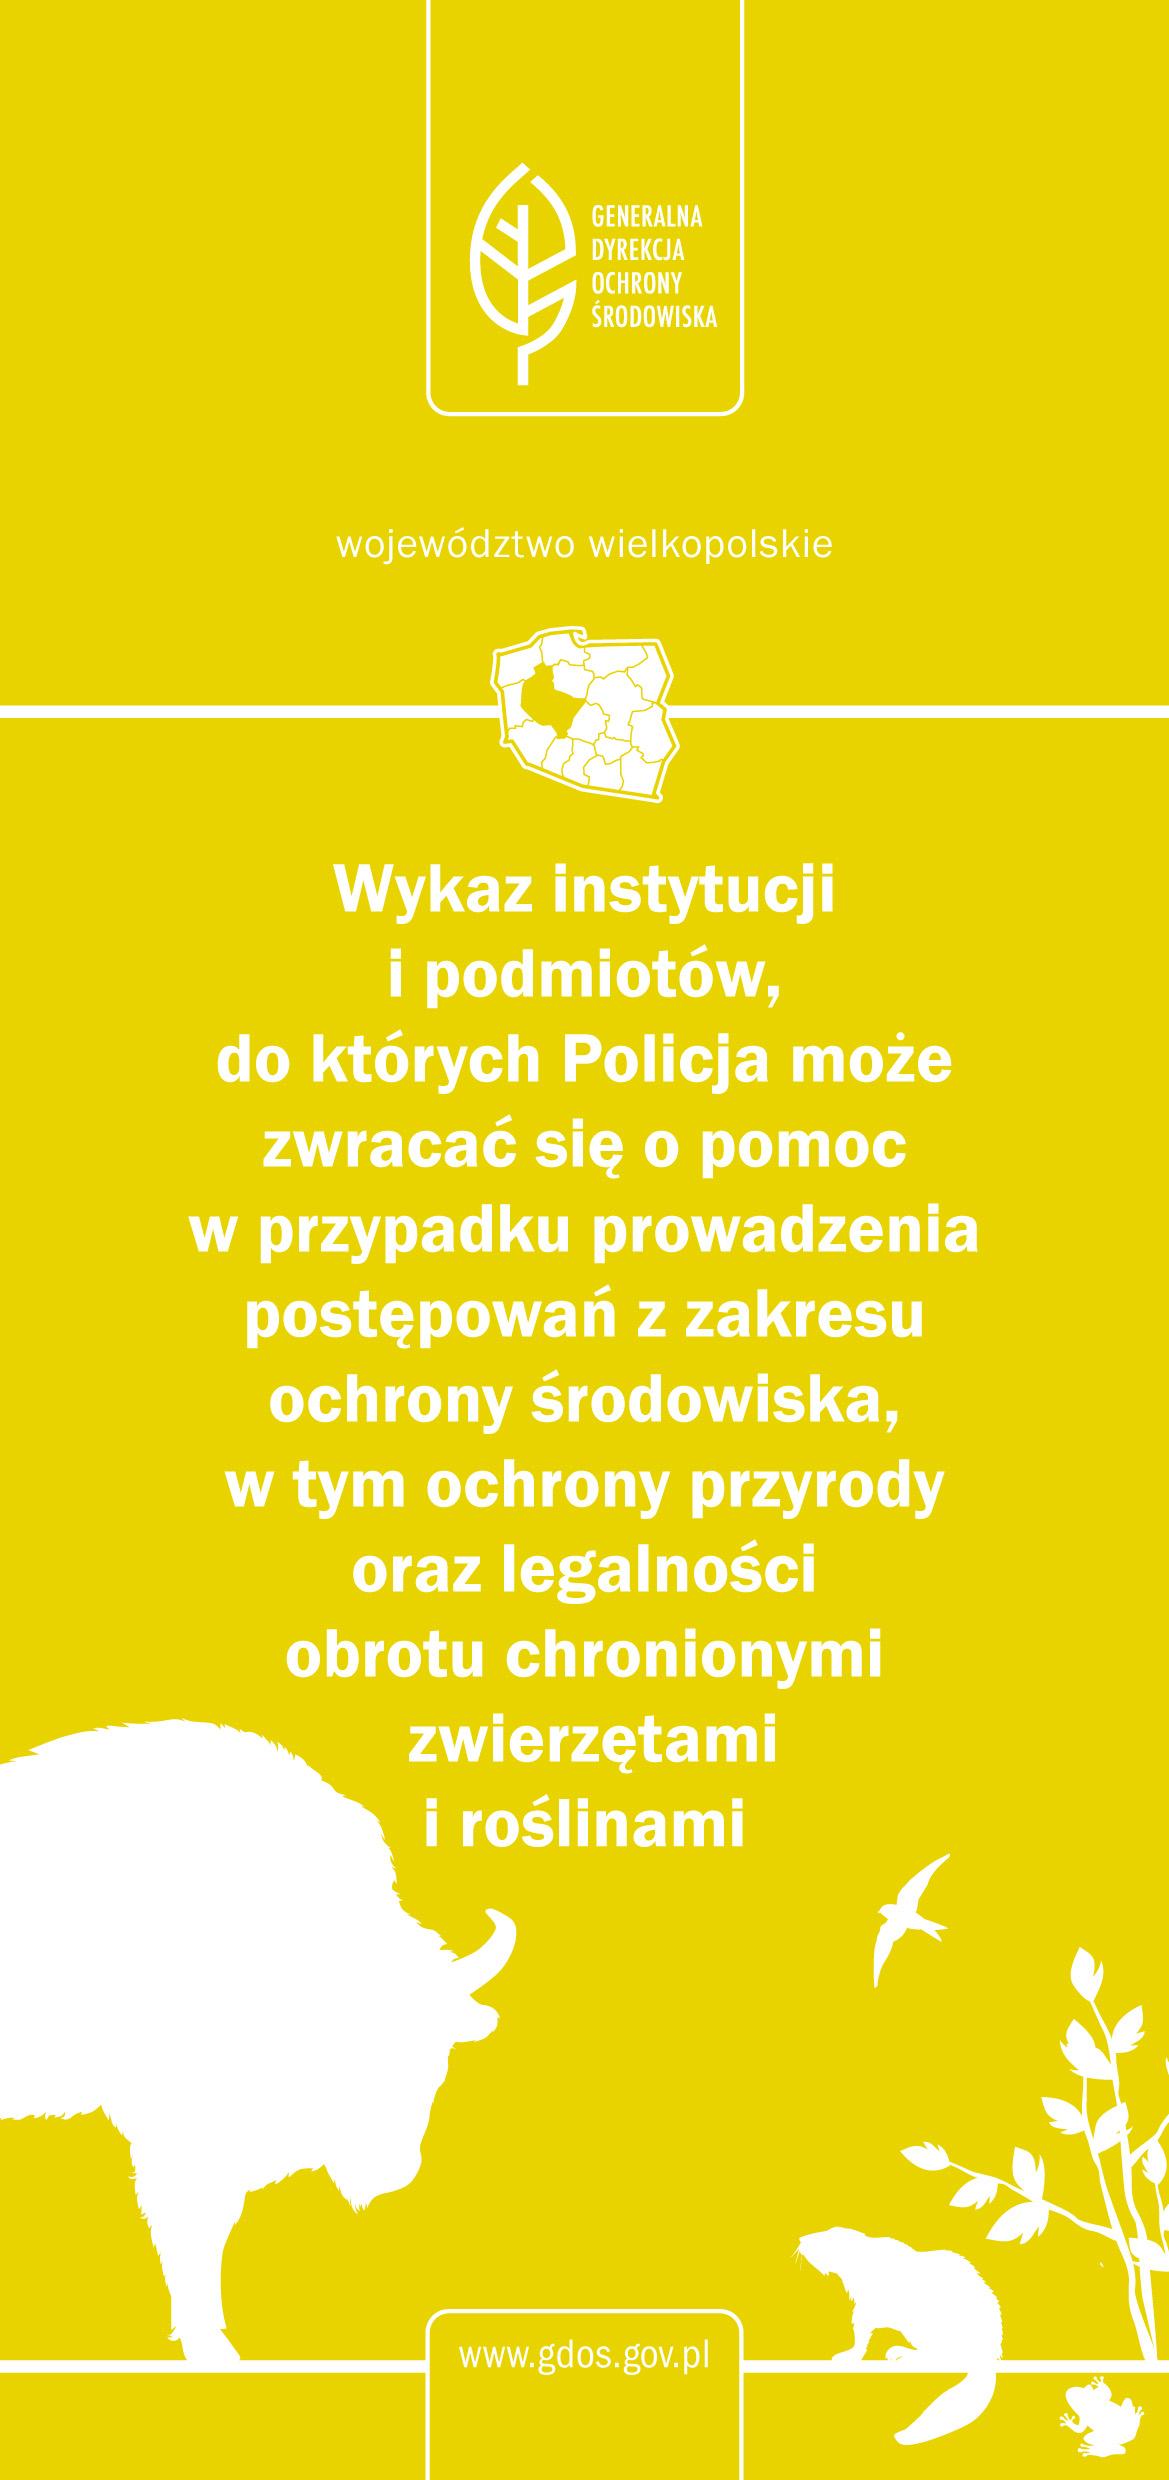 Województwo wielkopolskie